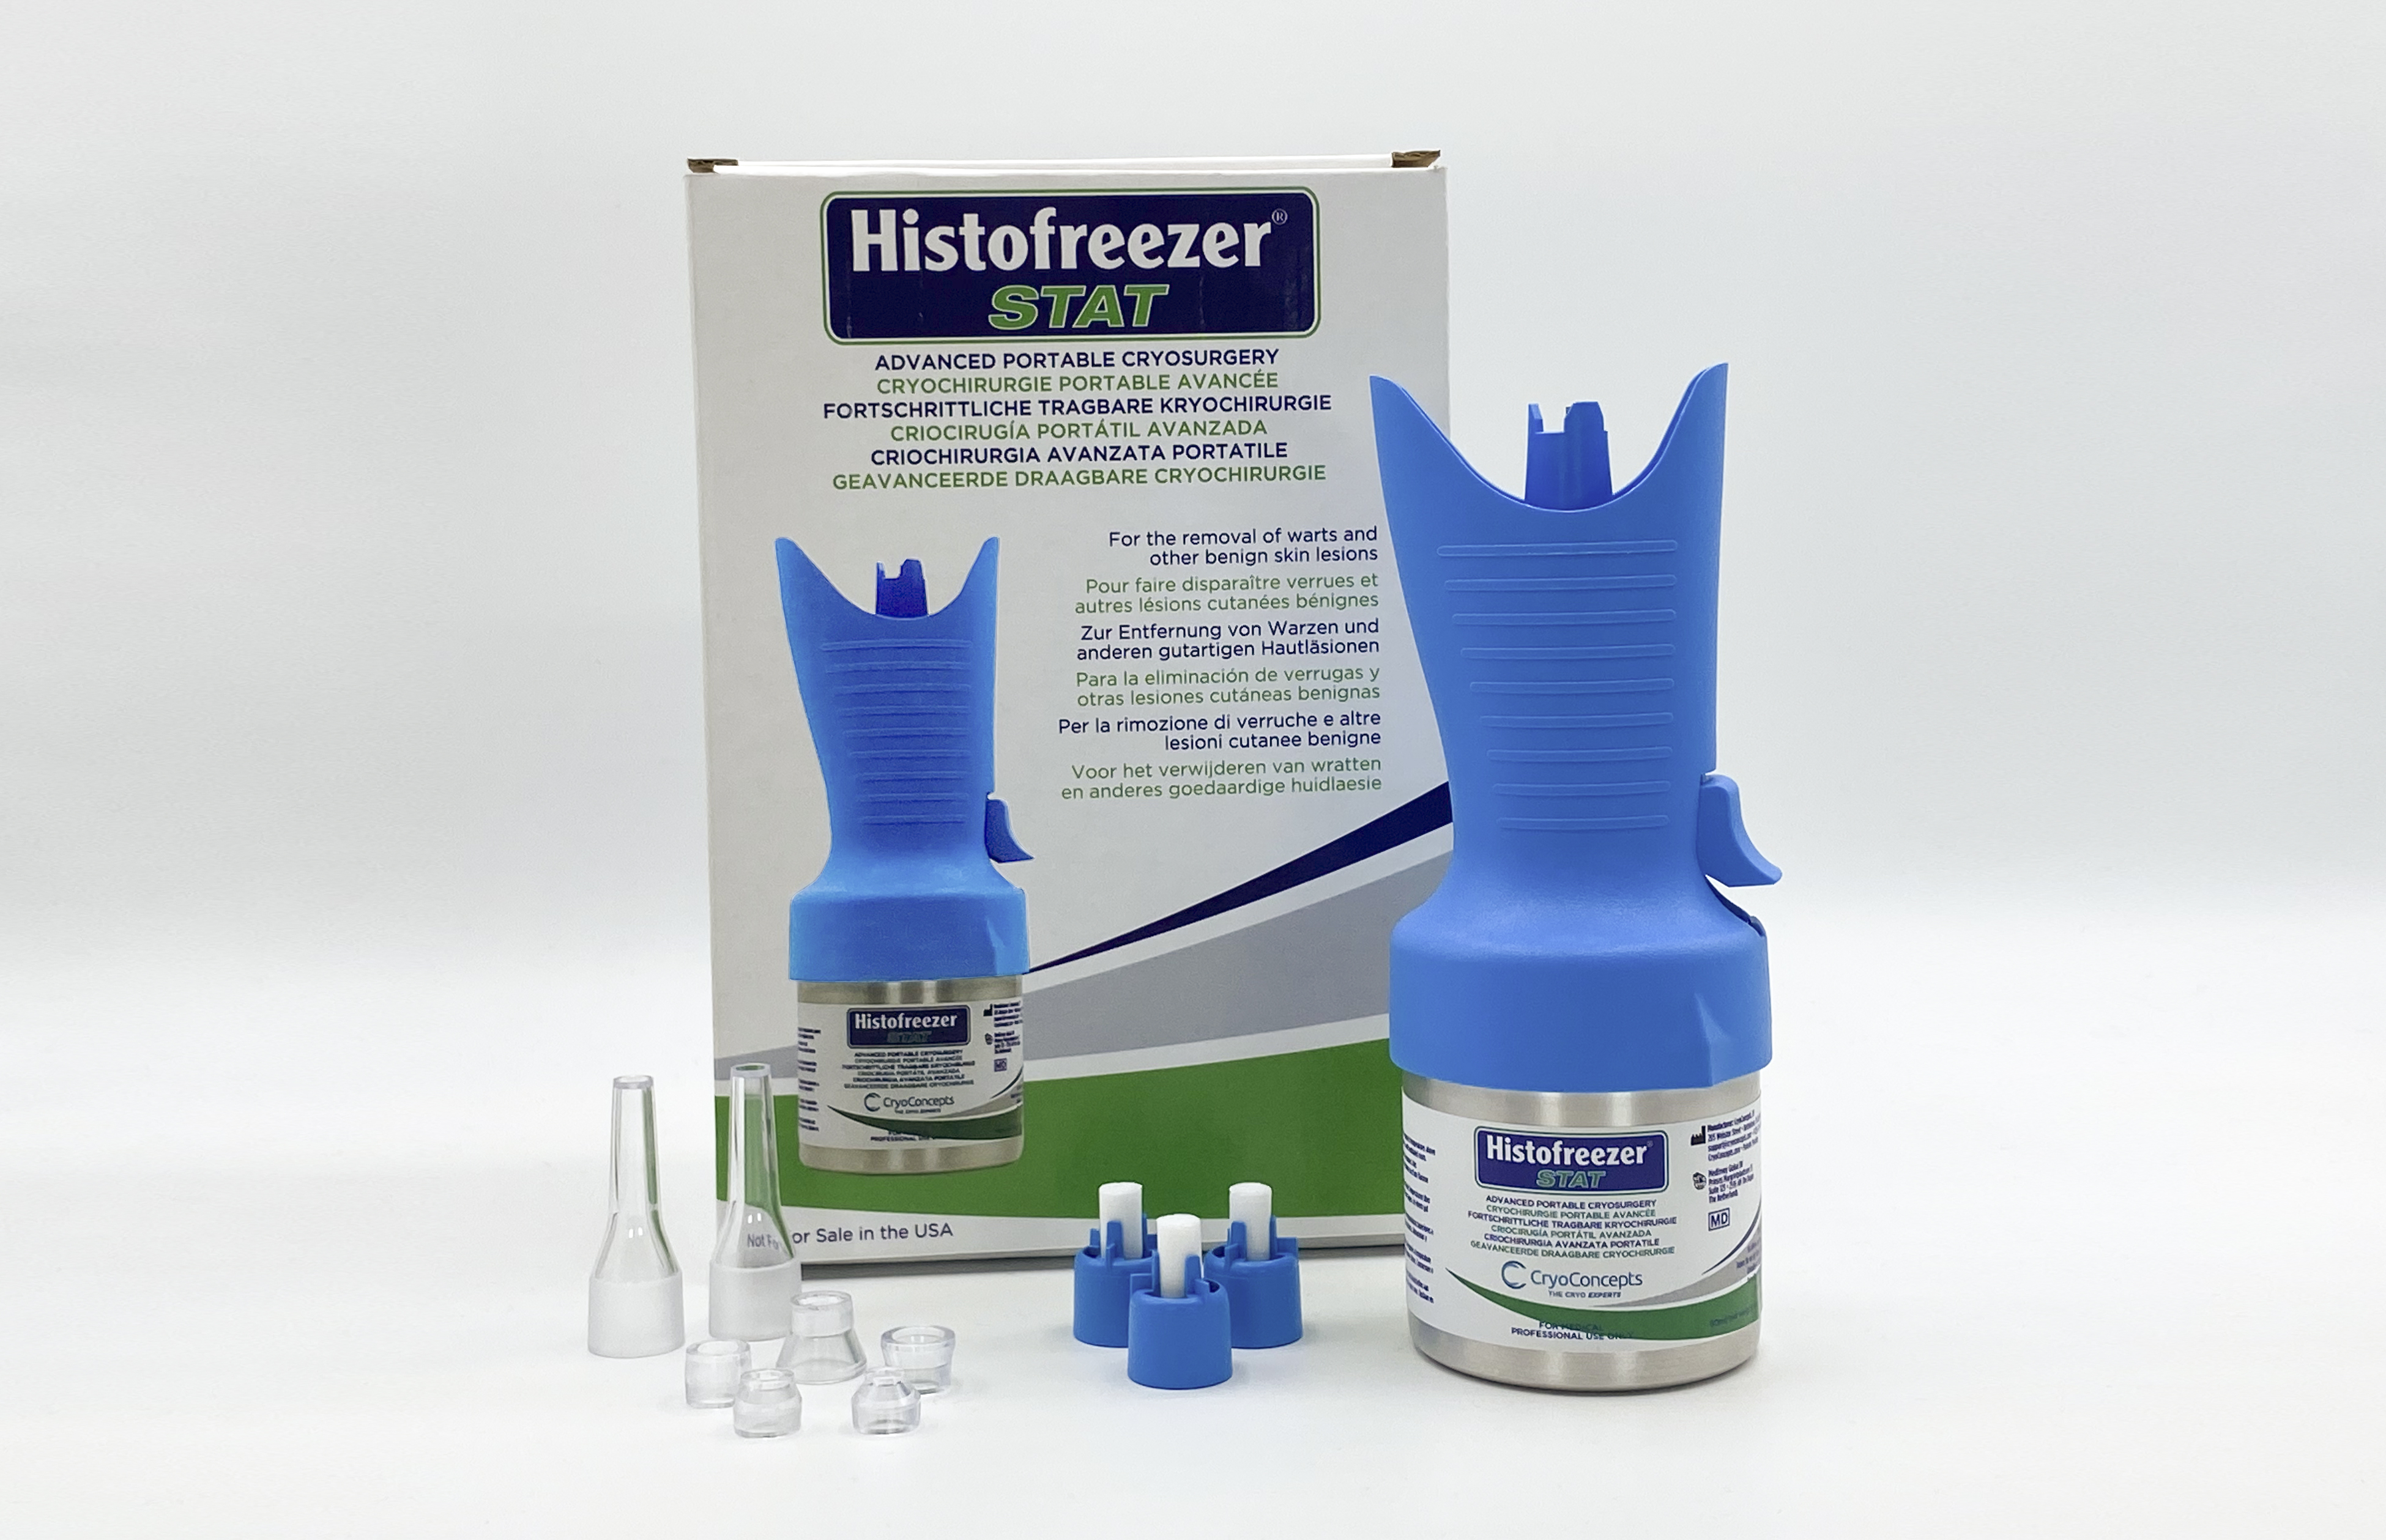 Histofreezer STAT 50 Advanced Portable Cryosurgery 90g image 1